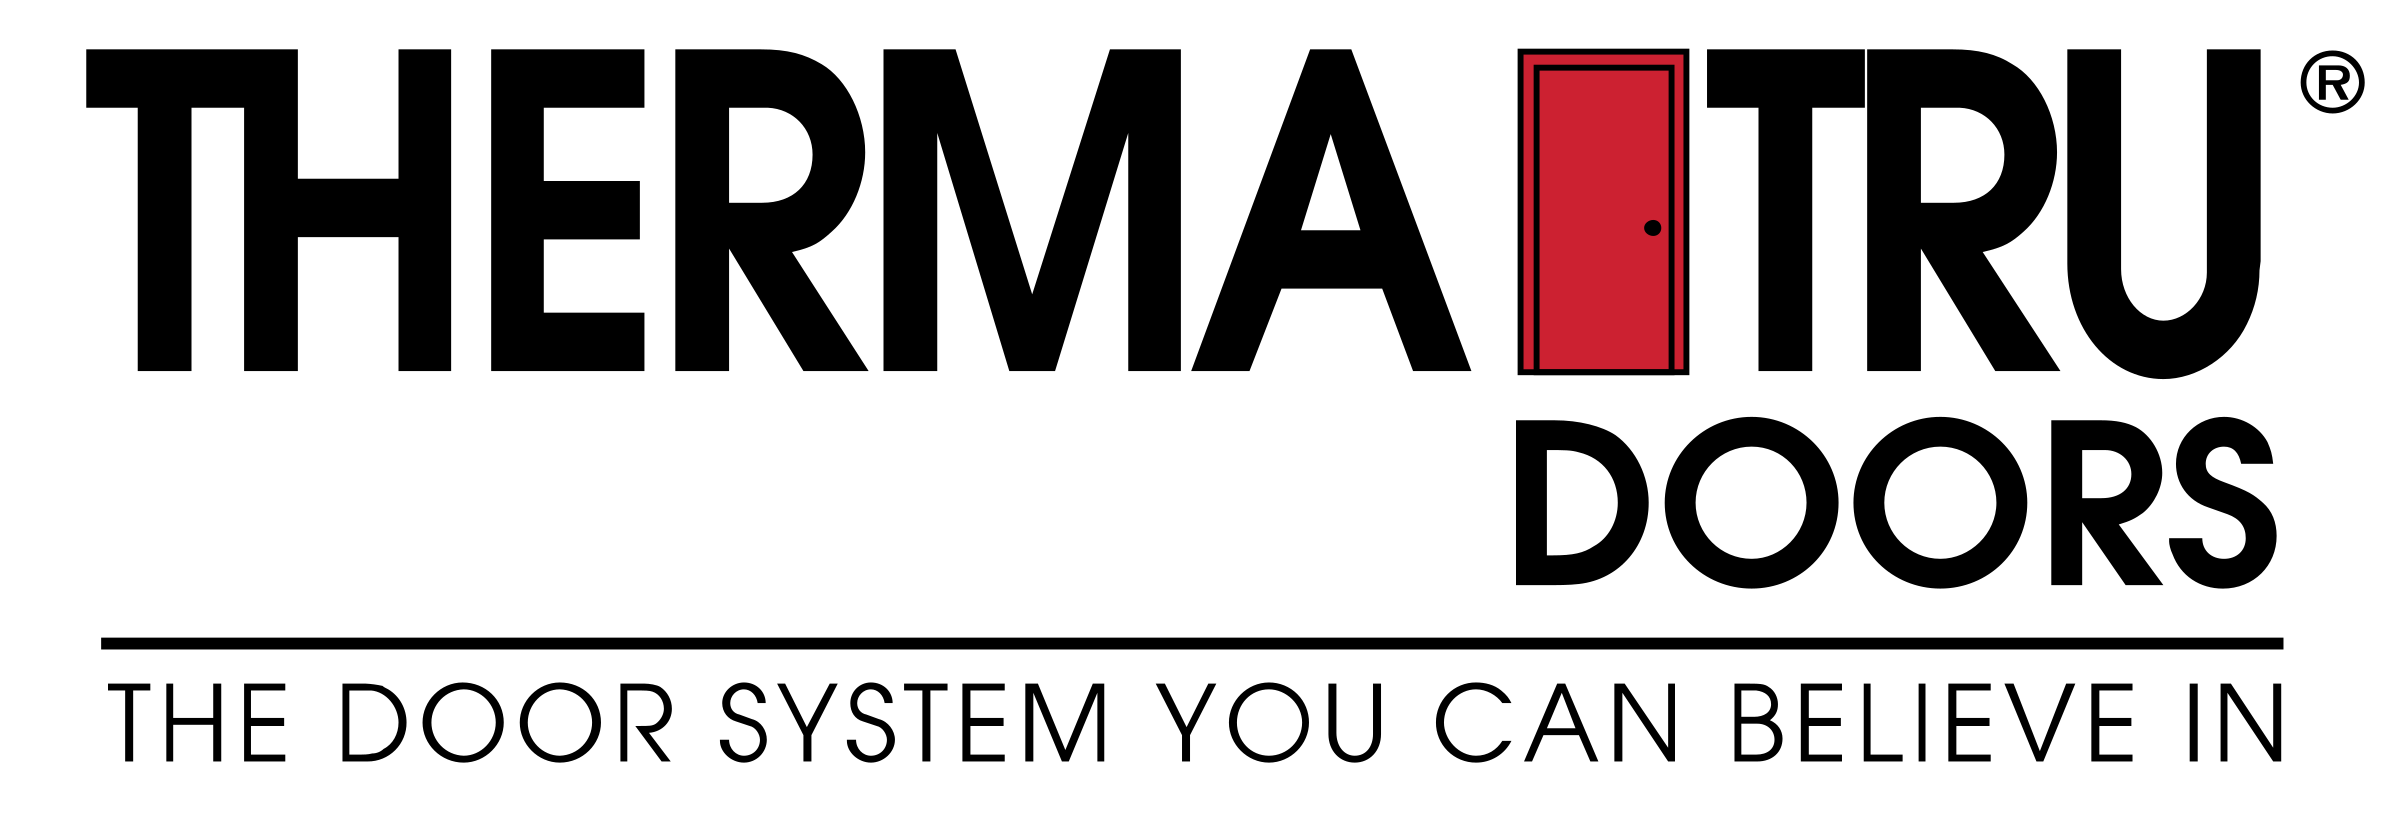 therma tru doors logo 1